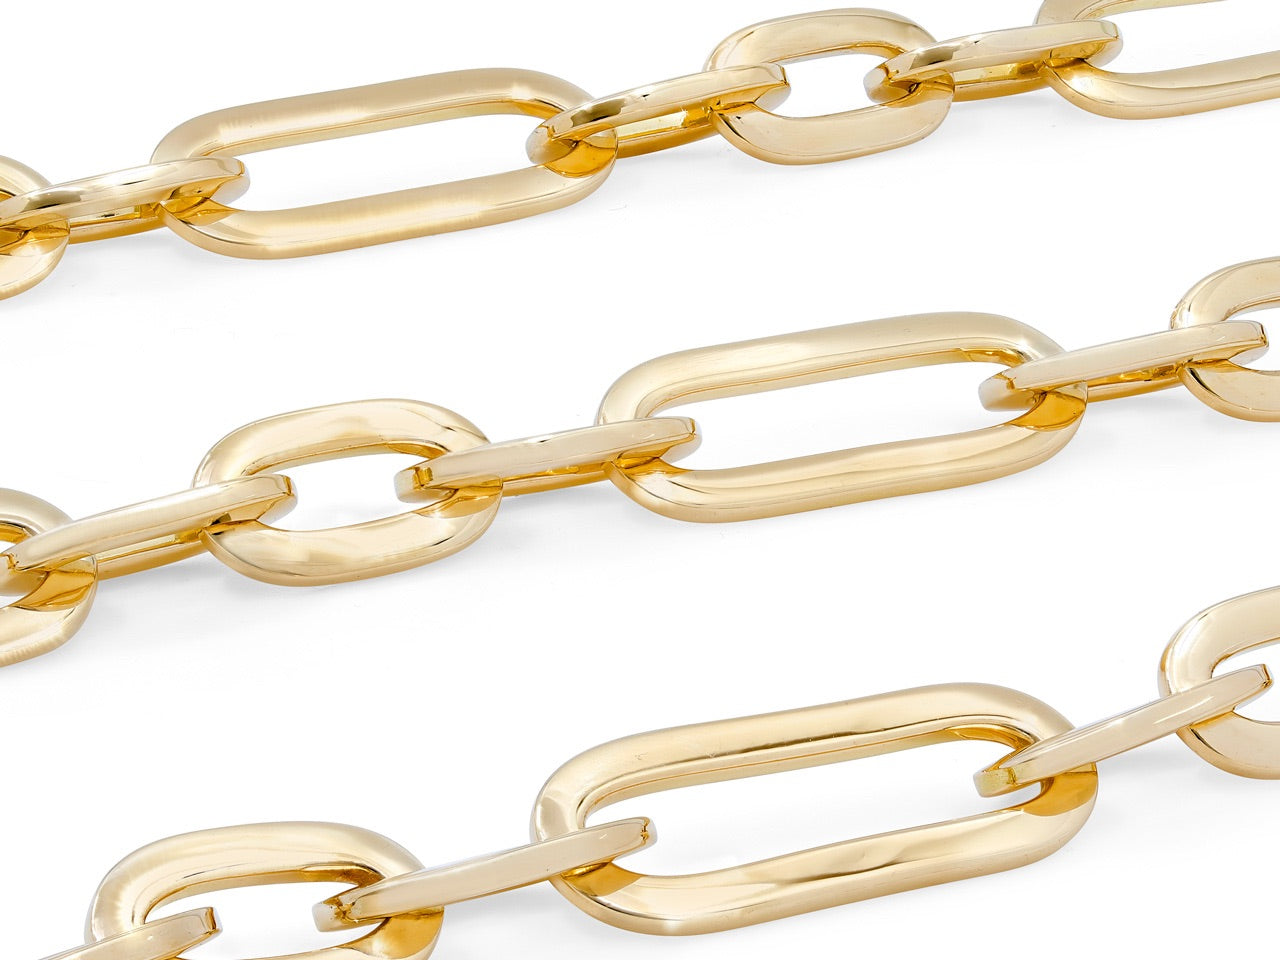 Italian Flattened Link Gold Chain in 18K, by Beladora